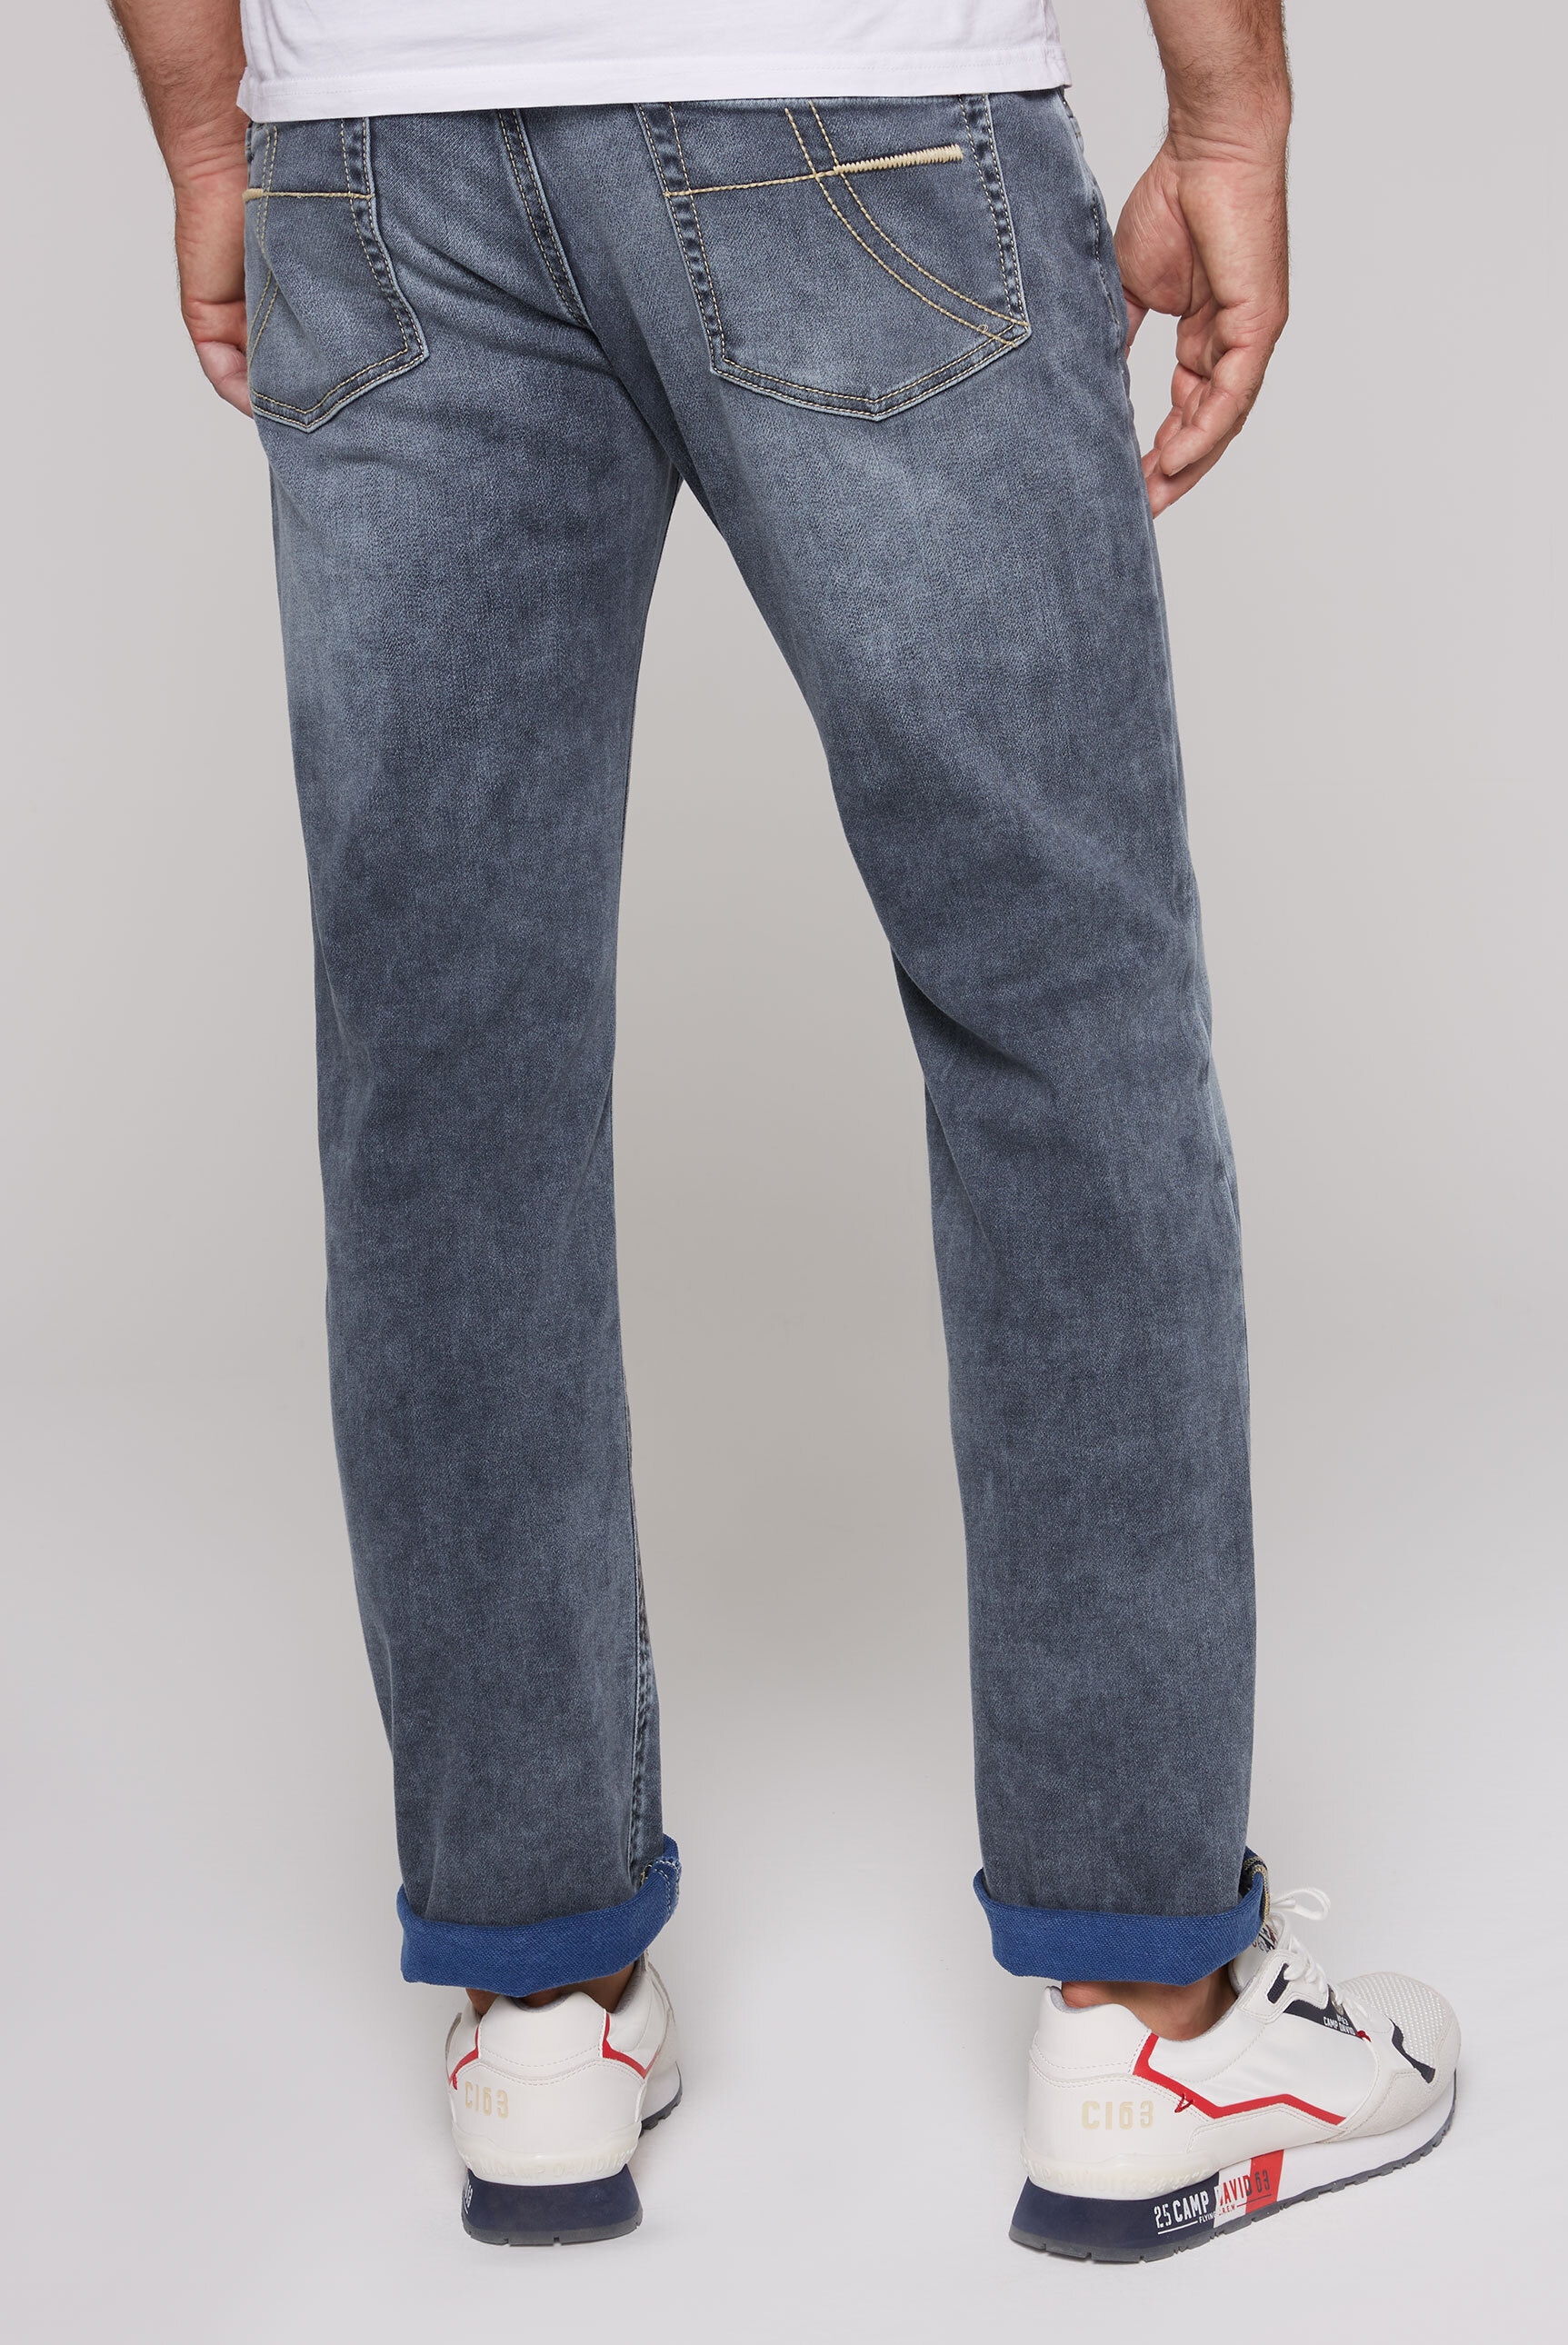 Verschluss ▷ Knopfleiste BAUR mit für | DAVID Regular-fit-Jeans, CAMP